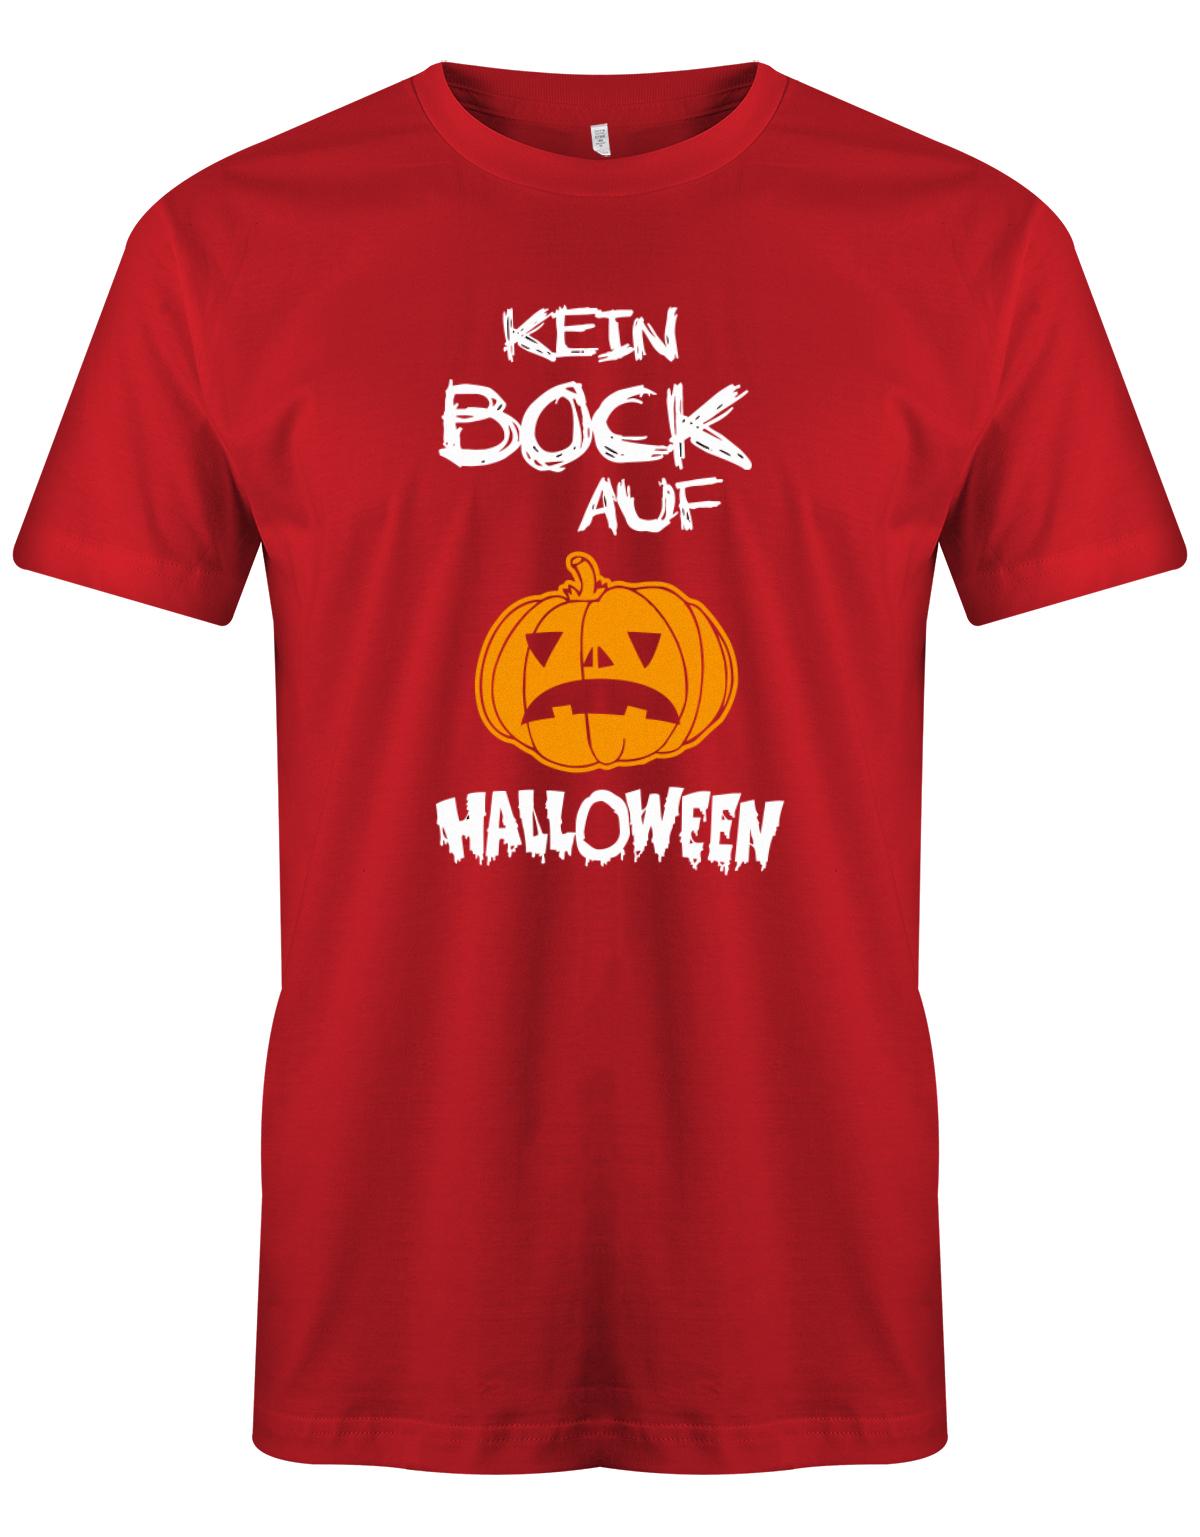 Kein-Bock-auf-Halloween-Herren-Shirt-Rot